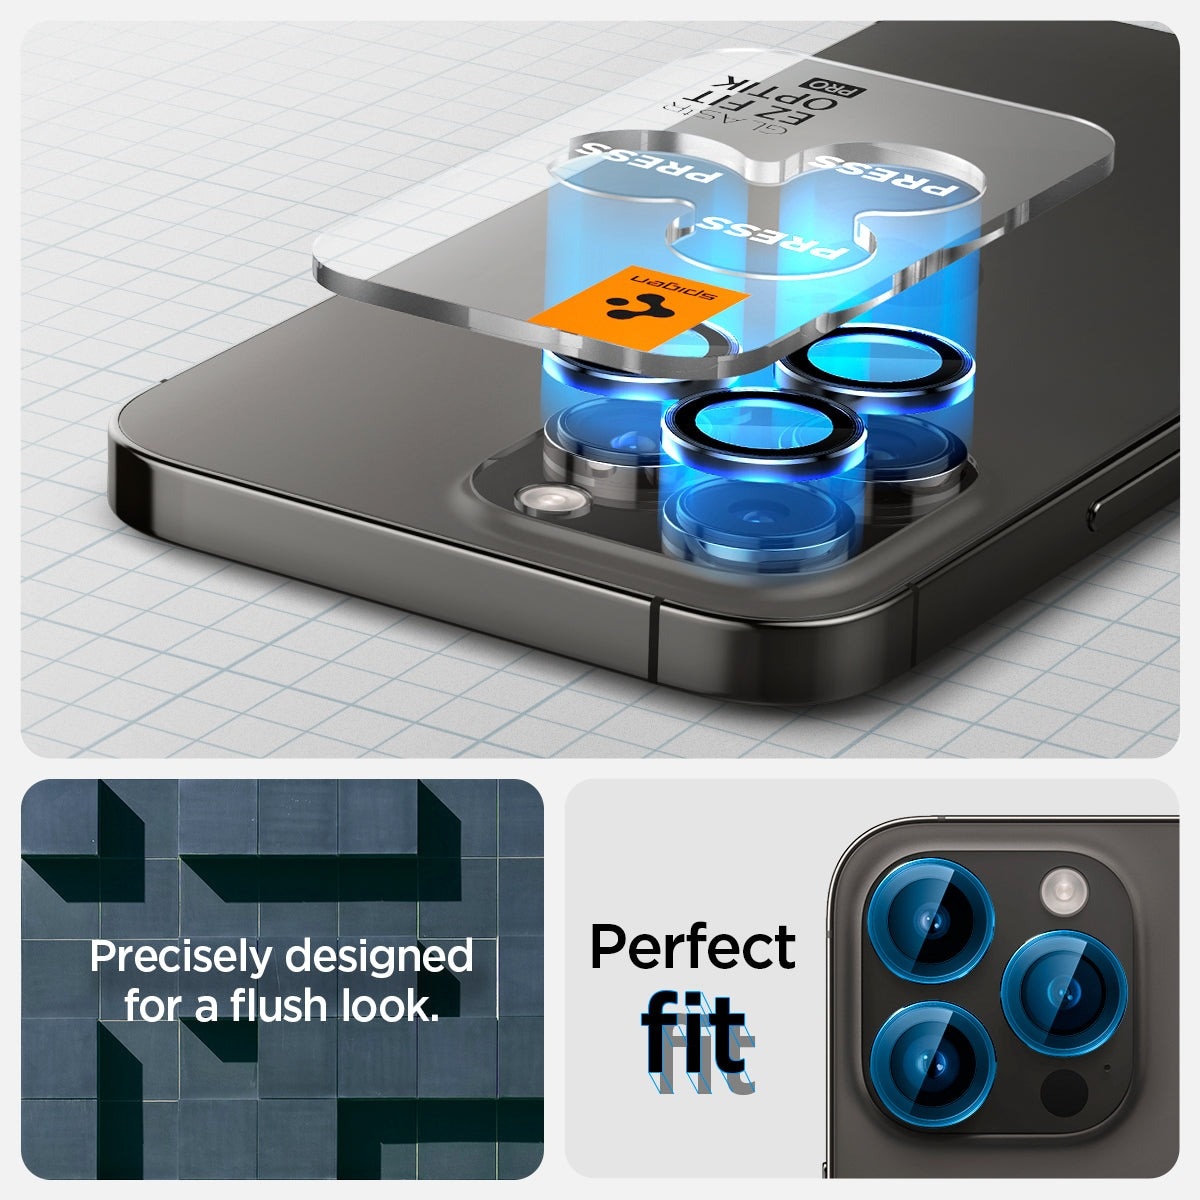 iPhone 15 Pro Max EZ Fit Optik Pro Lens Protector Black